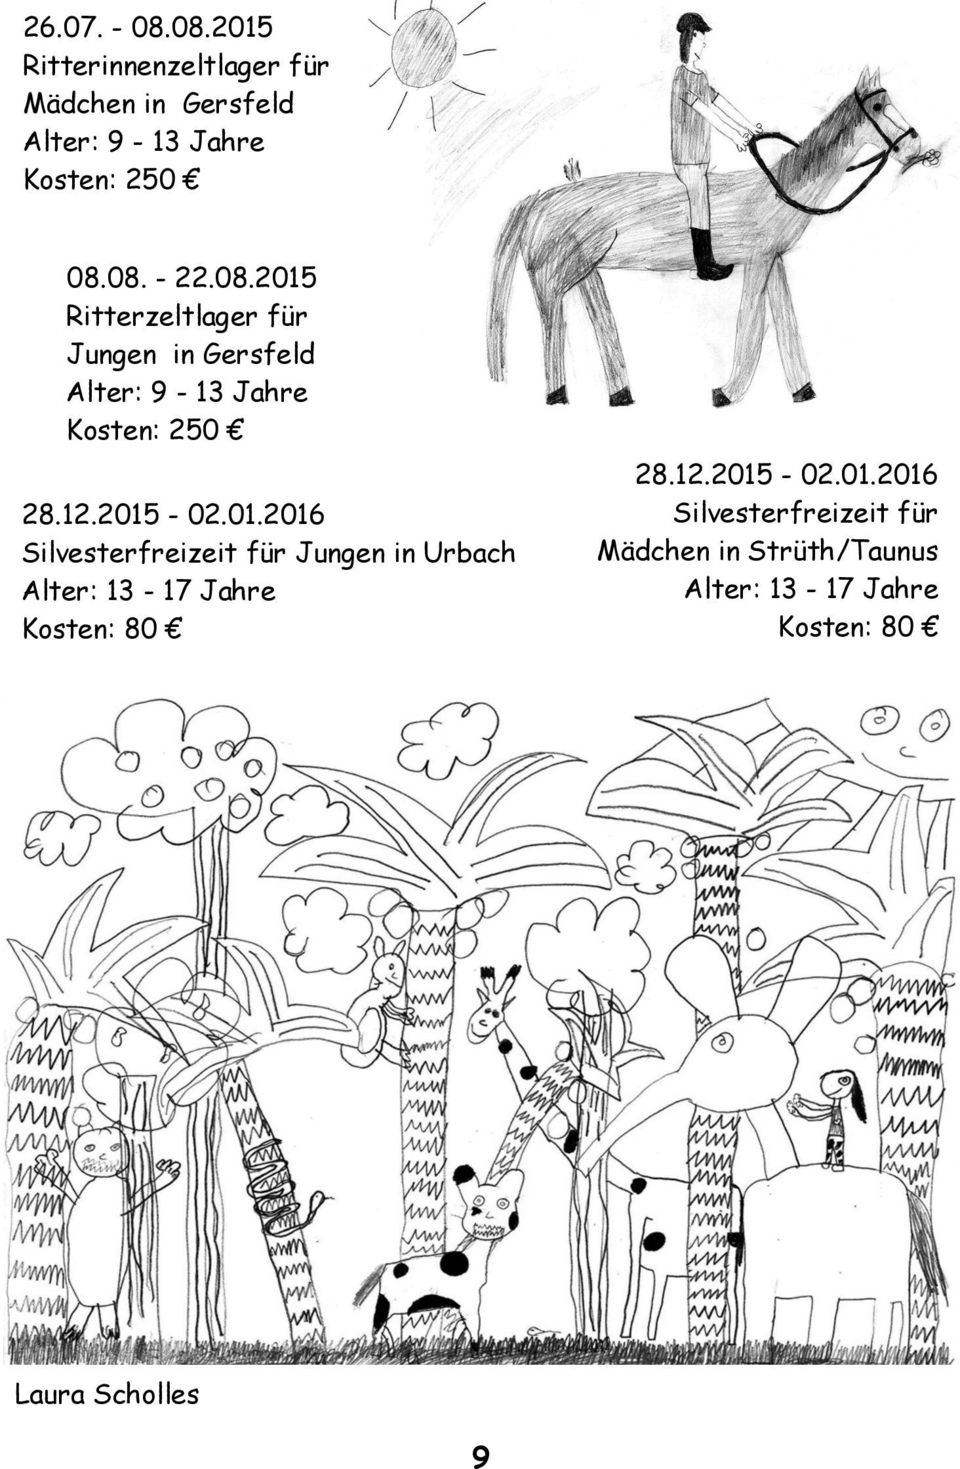 2015-02.01.2016 Silvesterfreizeit für Jungen in Urbach Alter: 13-17 Jahre Kosten: 80 28.12.